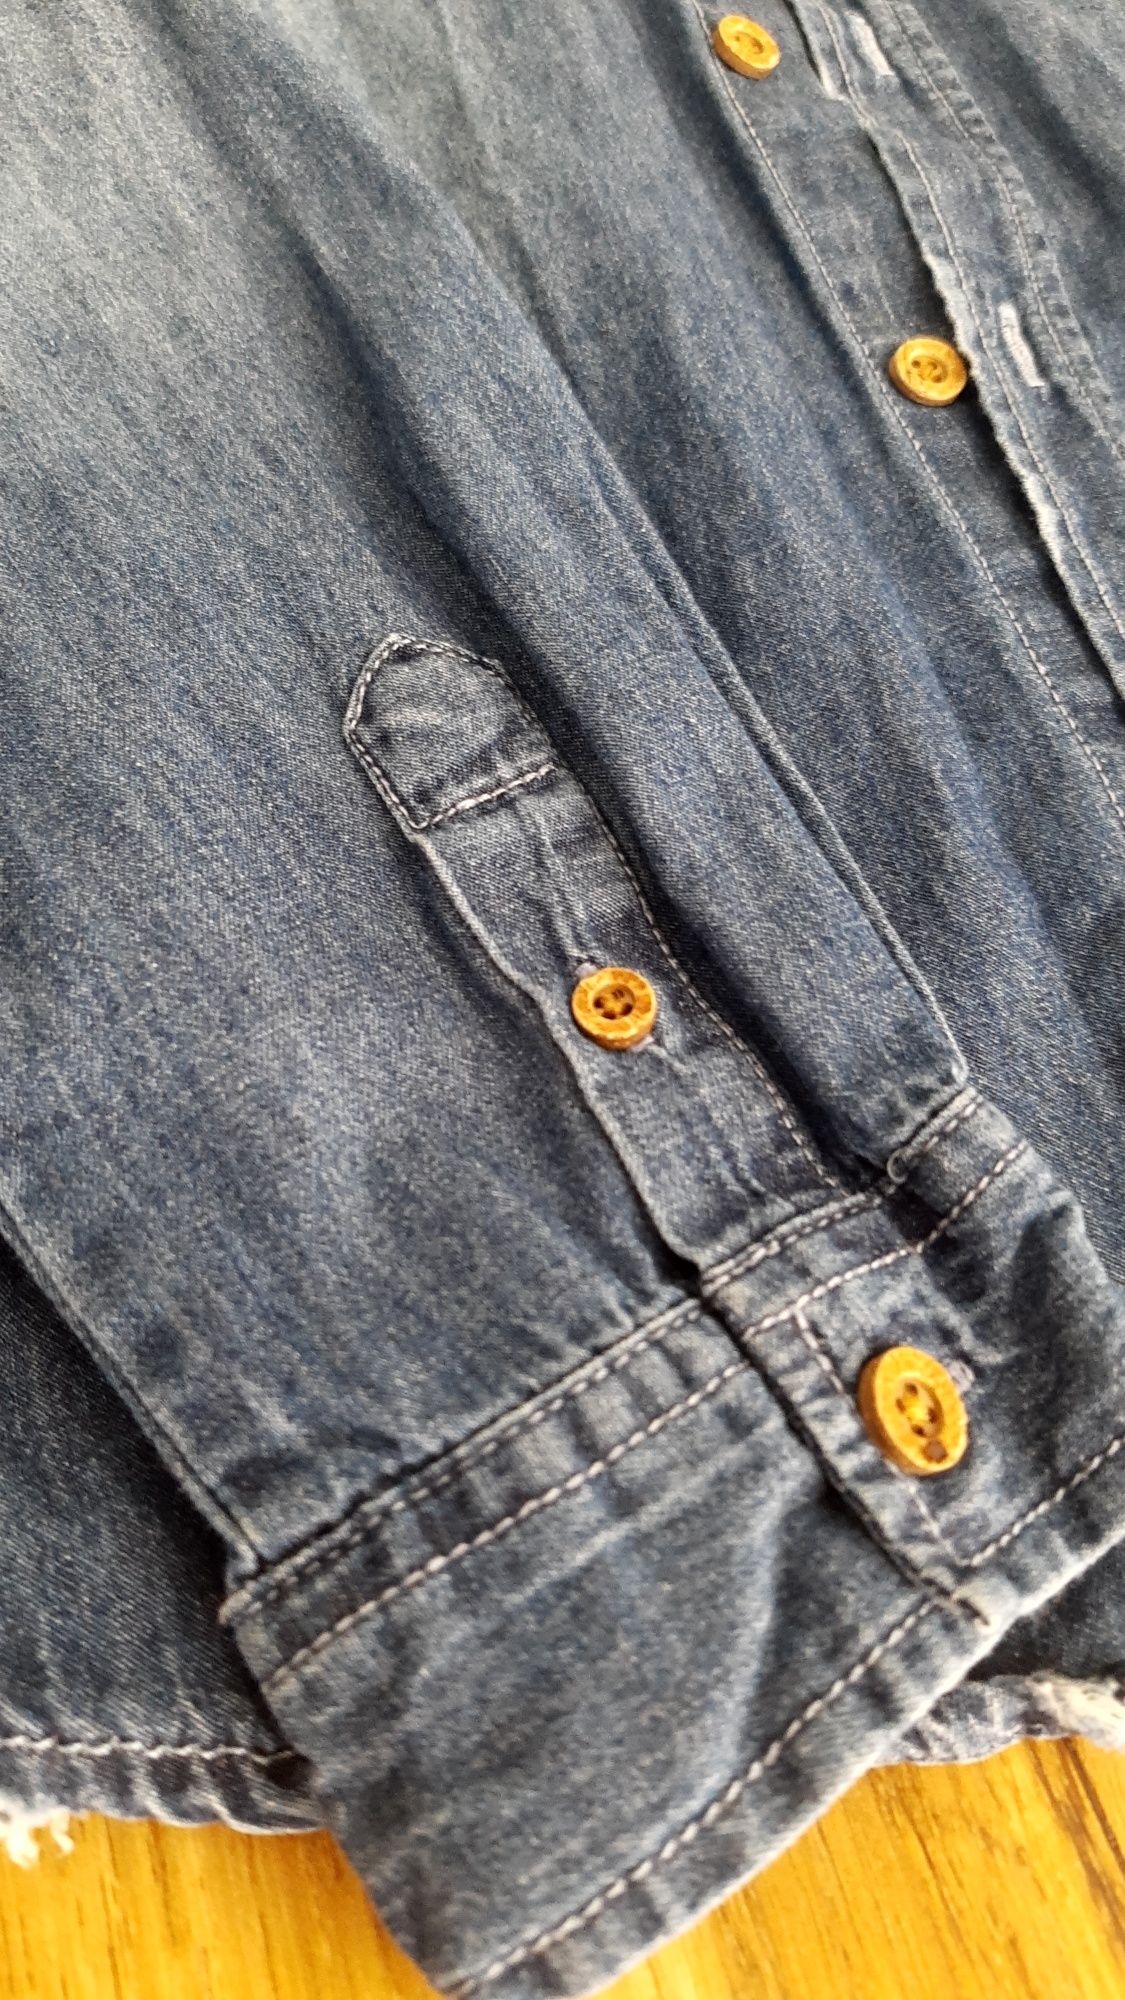 Koszula jeansowa chłopięca rozmiar 134-140